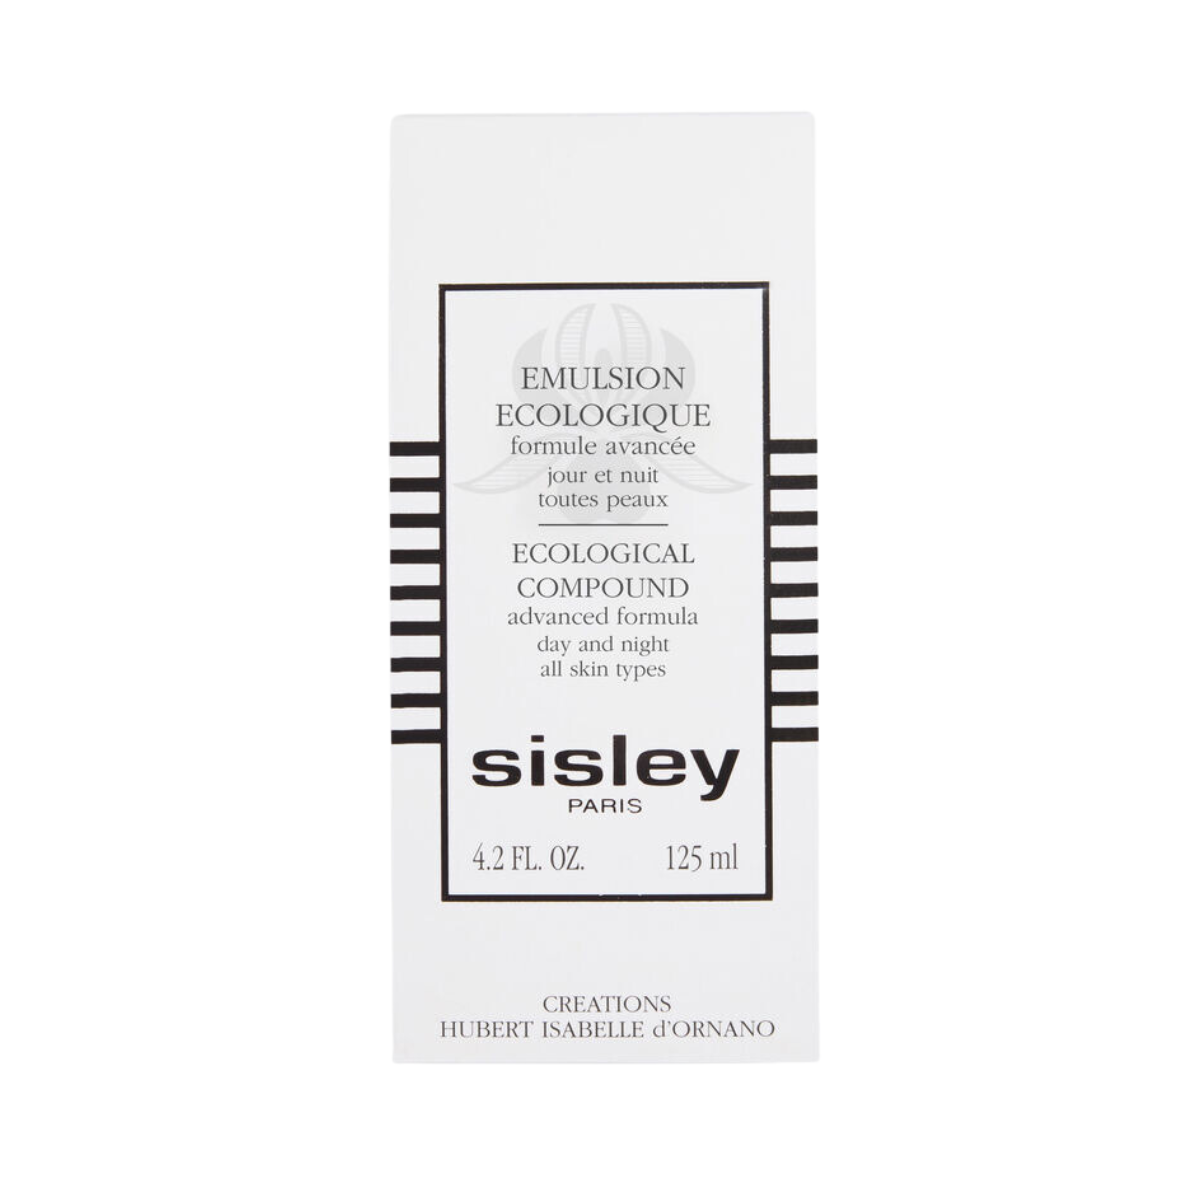 Sisley Paris Emulsion Ecologique Advance